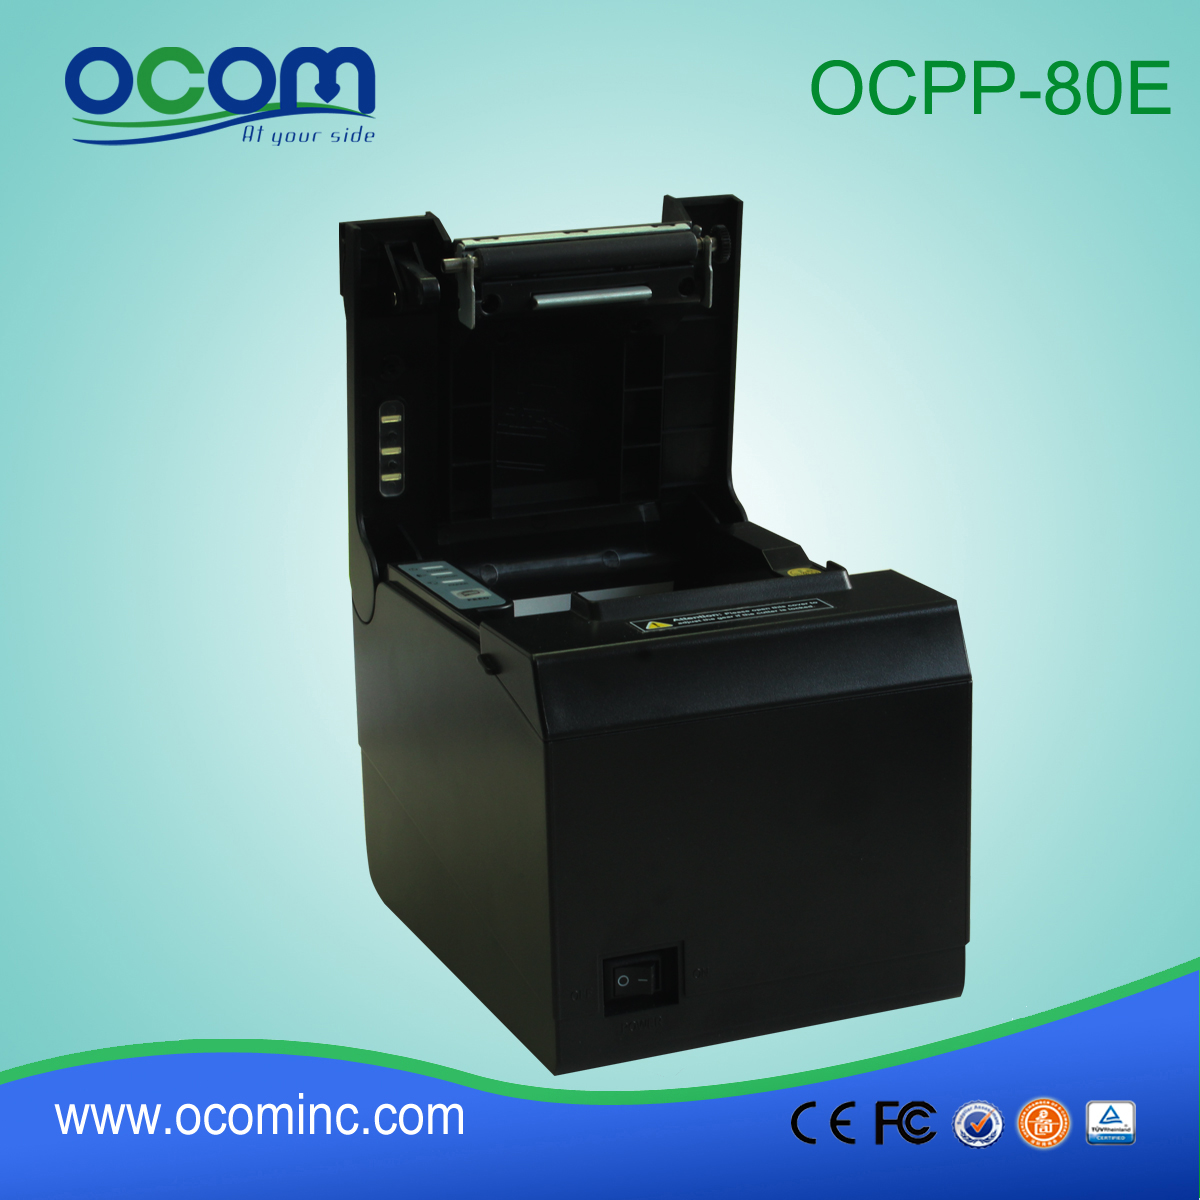 OCPP-80E USB Serial coupeur automatique 80mm imprimante bon marché de reçu thermique